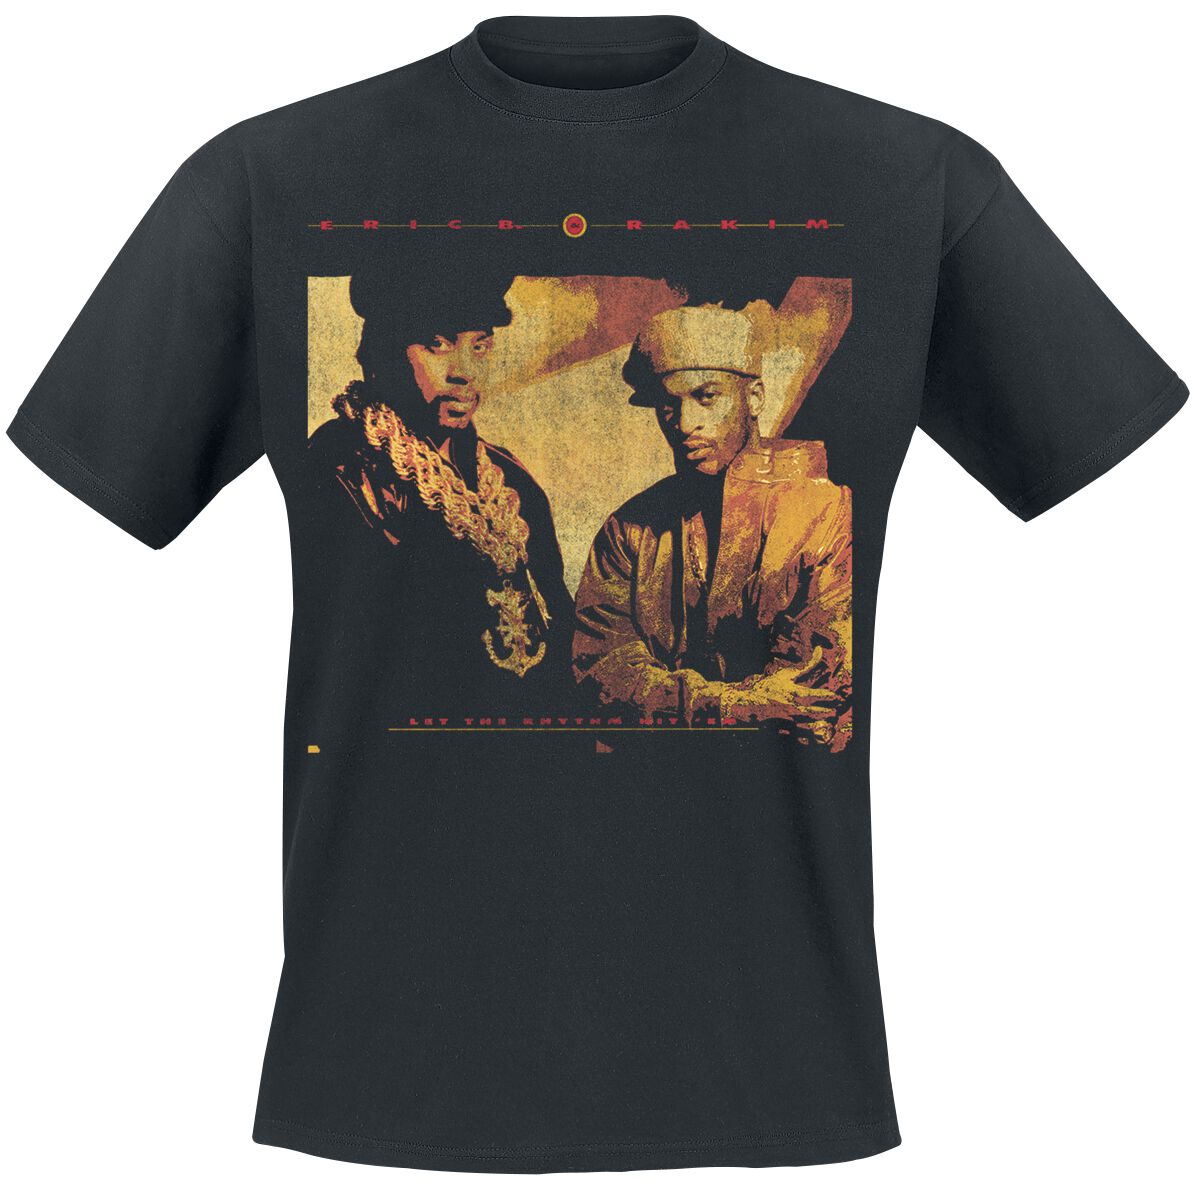 Eric B. & Rakim T-Shirt - Rhythm Hit Em - S bis 3XL - für Männer - Größe XL - schwarz  - Lizenziertes Merchandise! von Eric B. & Rakim